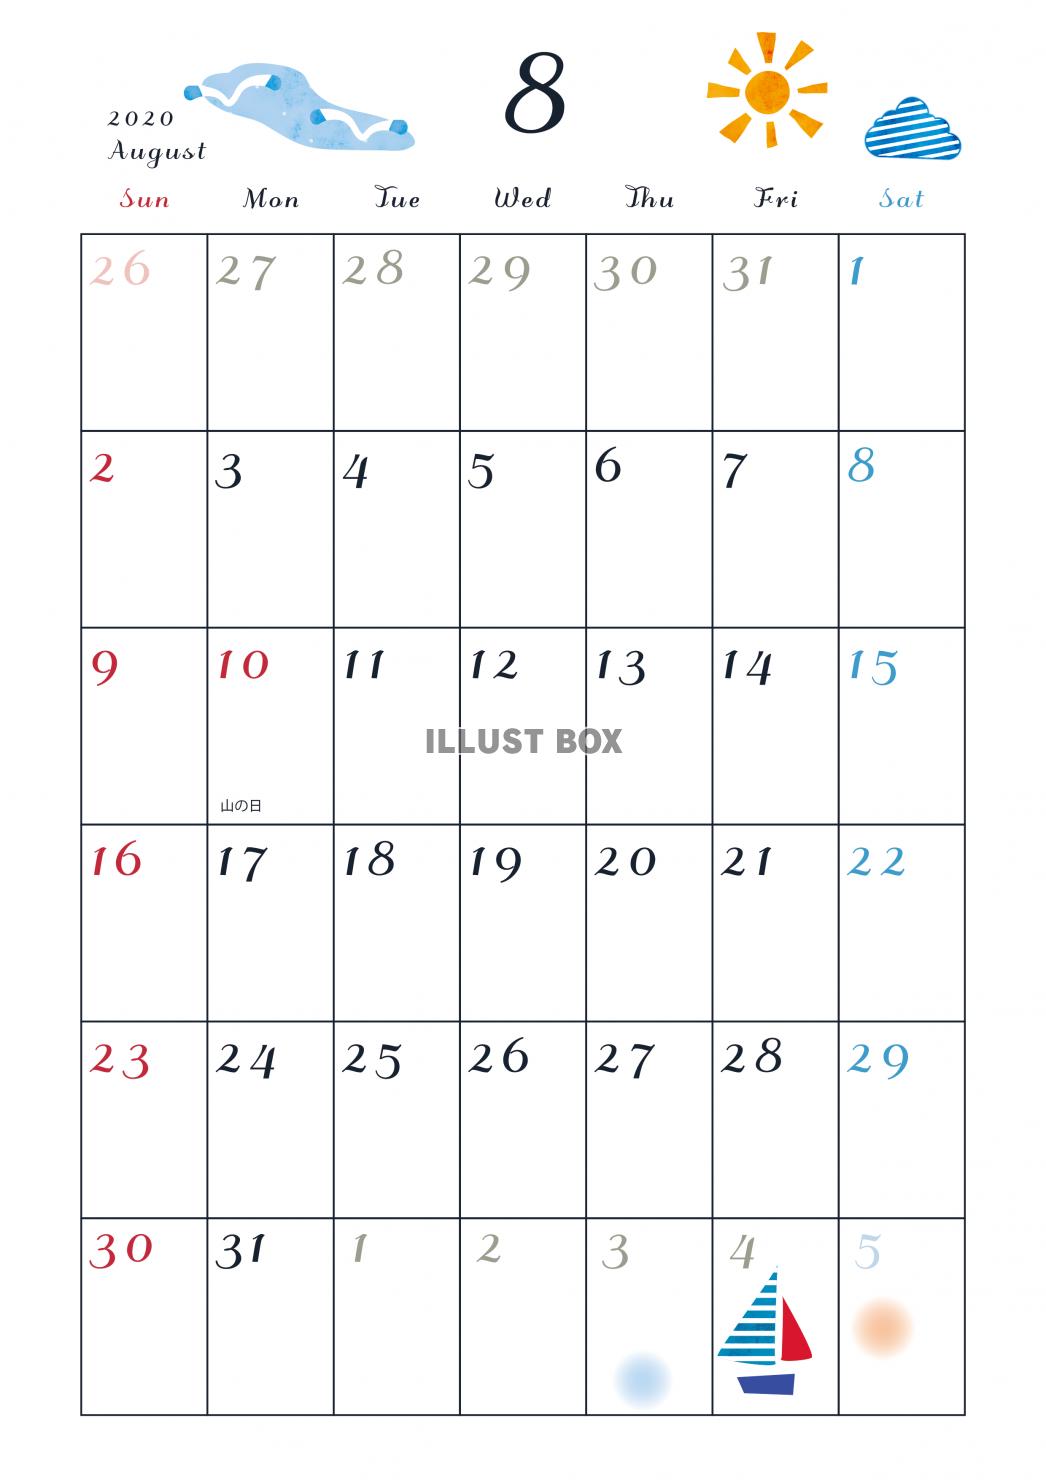 無料イラスト 2020年 カレンダー 8月縦型 月イメージイラスト